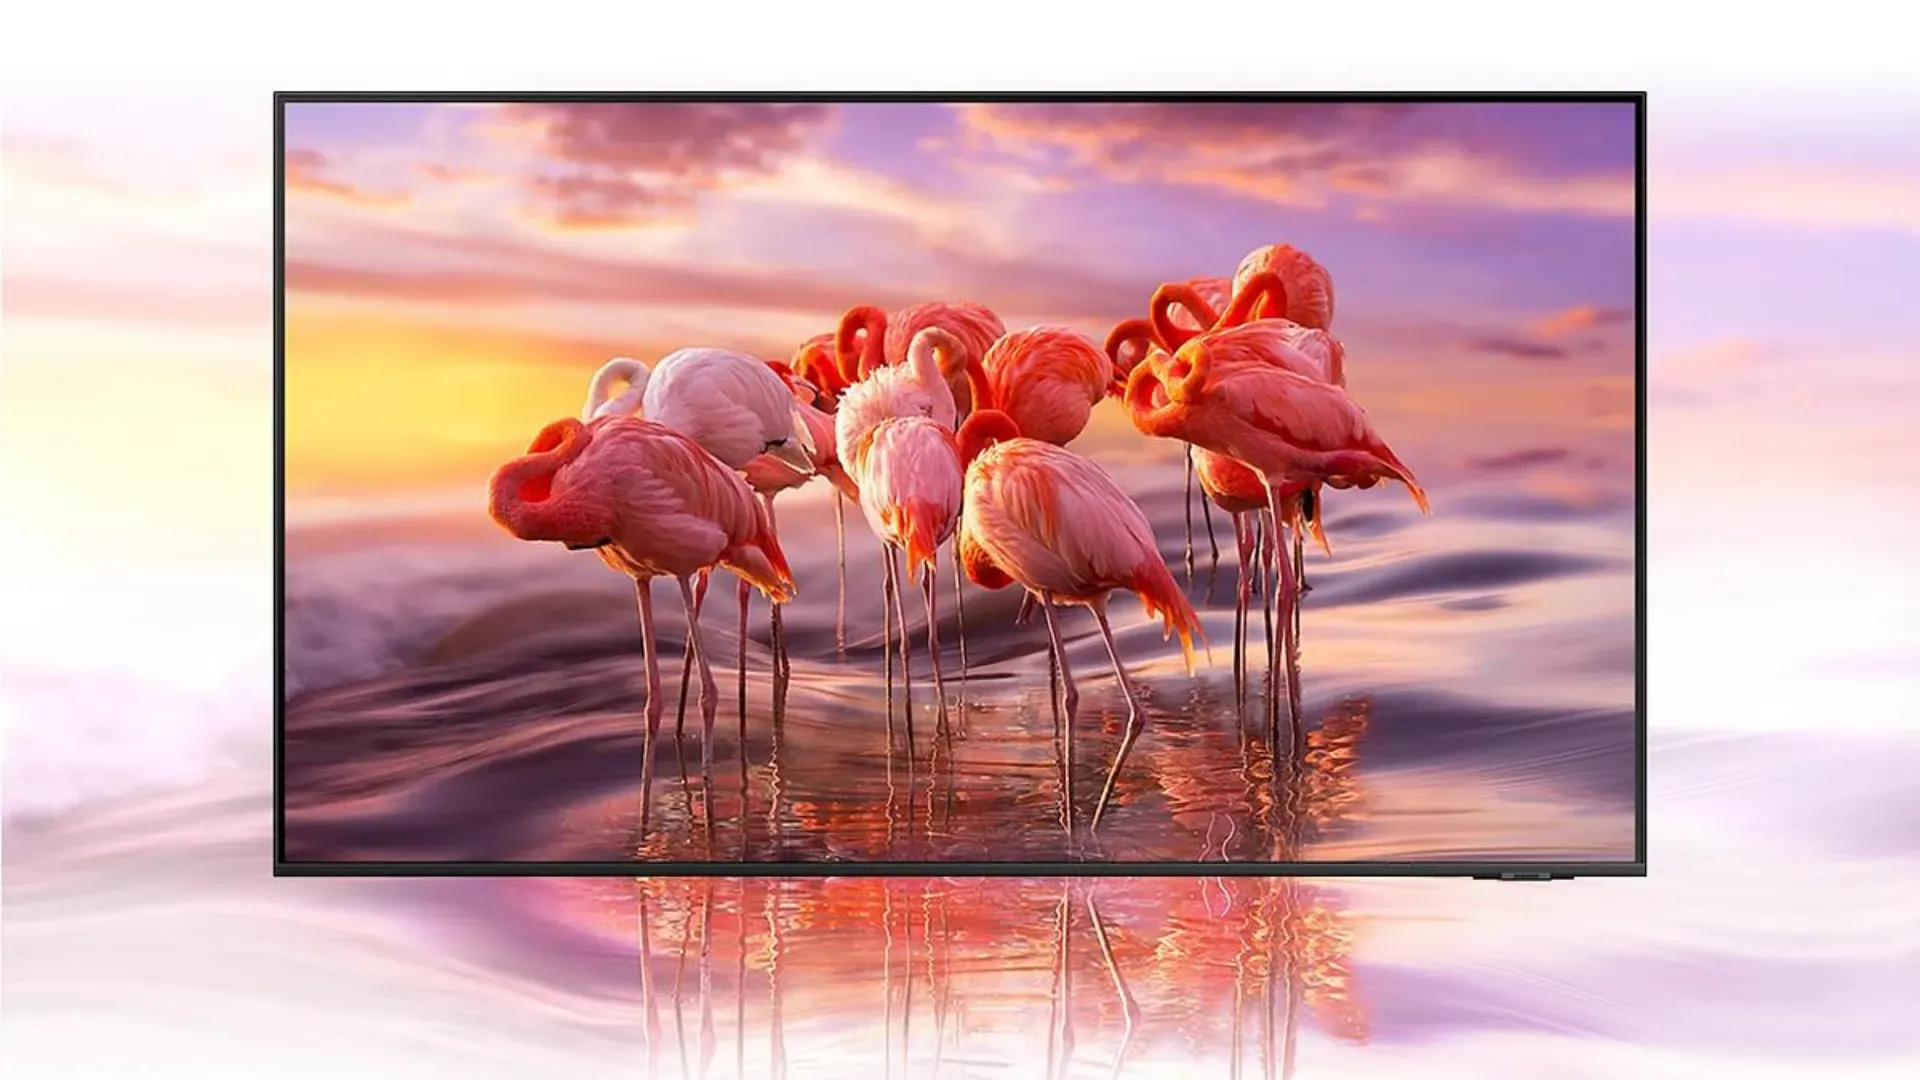 TV Samsung Q60A em fundo branco e rosa, reproduzindo imagem com flamingos